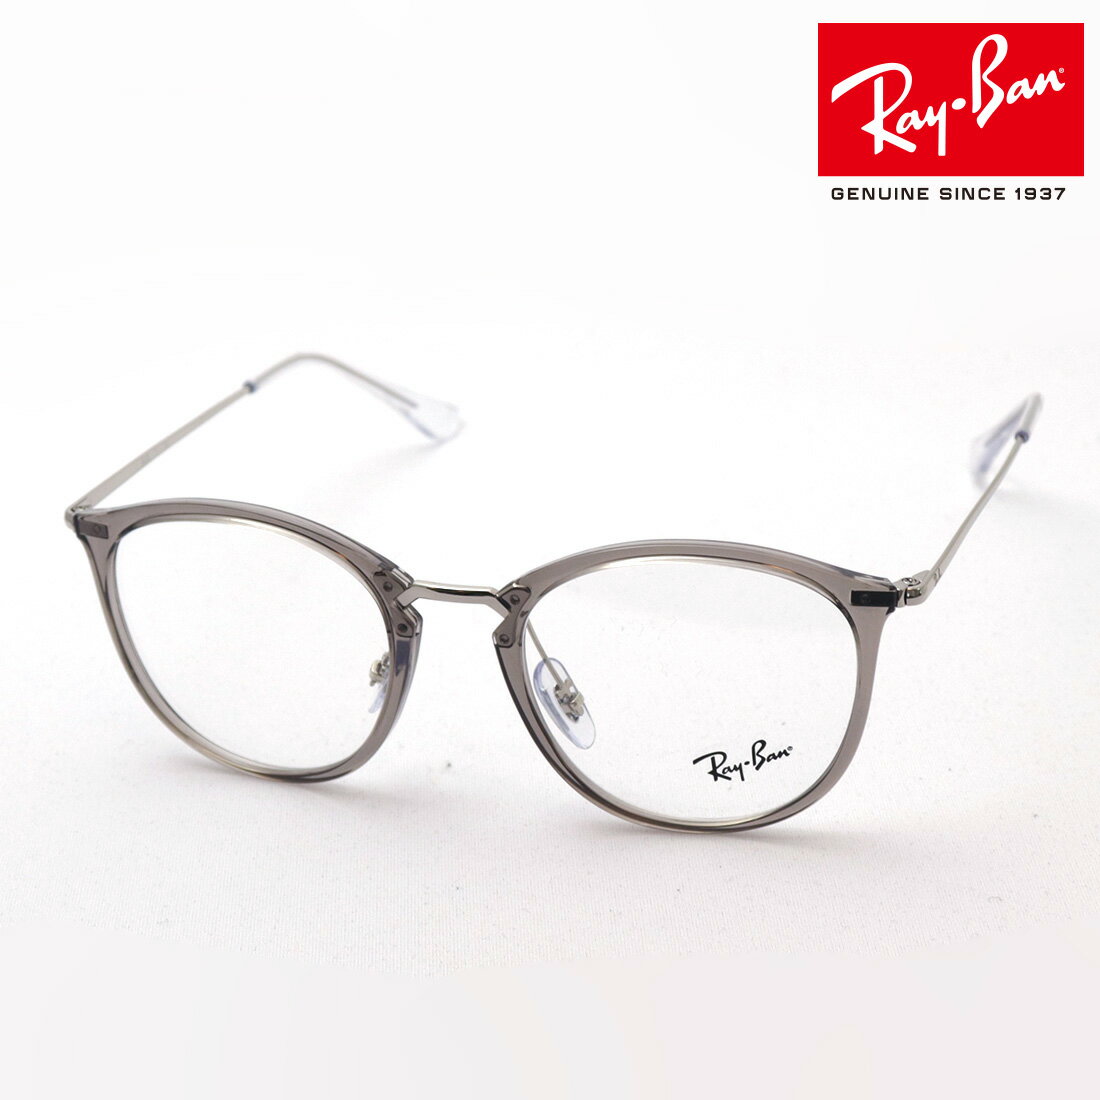 レイバン メガネ メンズ 正規レイバン日本最大級の品揃え レイバン メガネ フレーム Ray-Ban RX7140 8125 伊達メガネ 度付き ブルーライト カット 眼鏡 RayBan ボストン グレー系